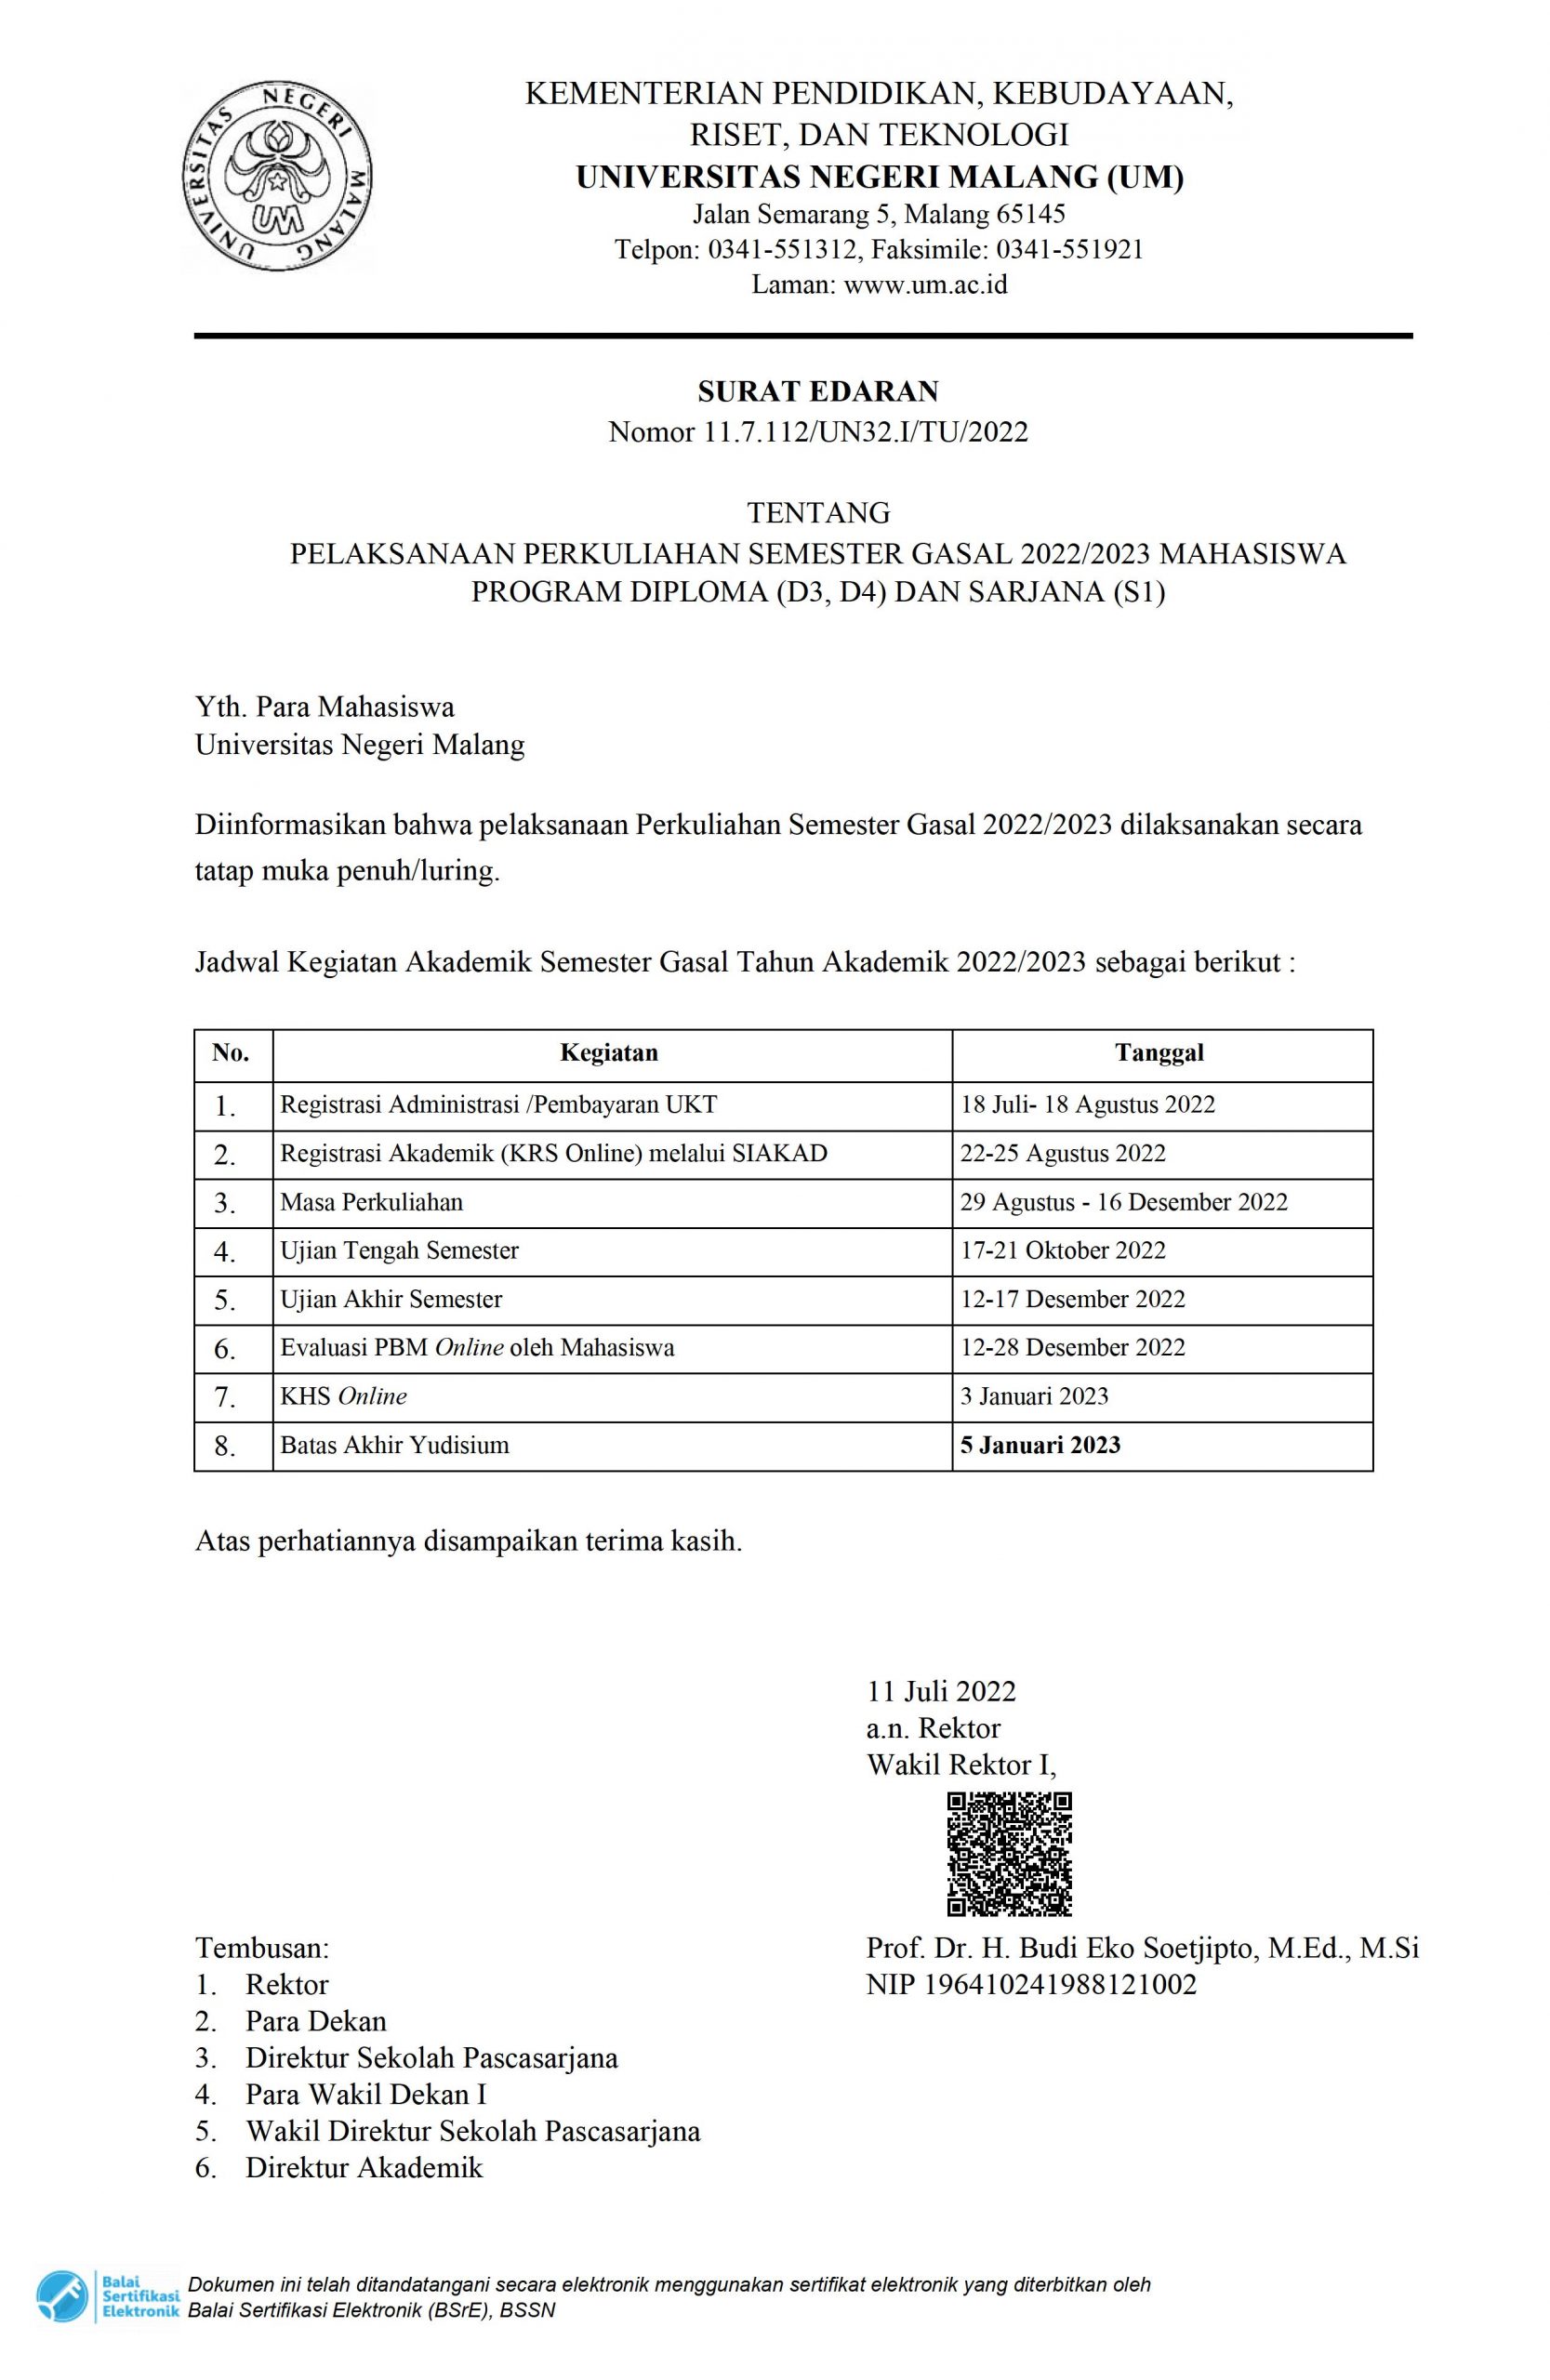 PELAKSANAAN PERKULIAHAN SEMESTER GASAL 2022/2023 UNTUK MAHASISWA PROGRAM DIPLOMA (D3, D4) DAN SARJANA (S1)